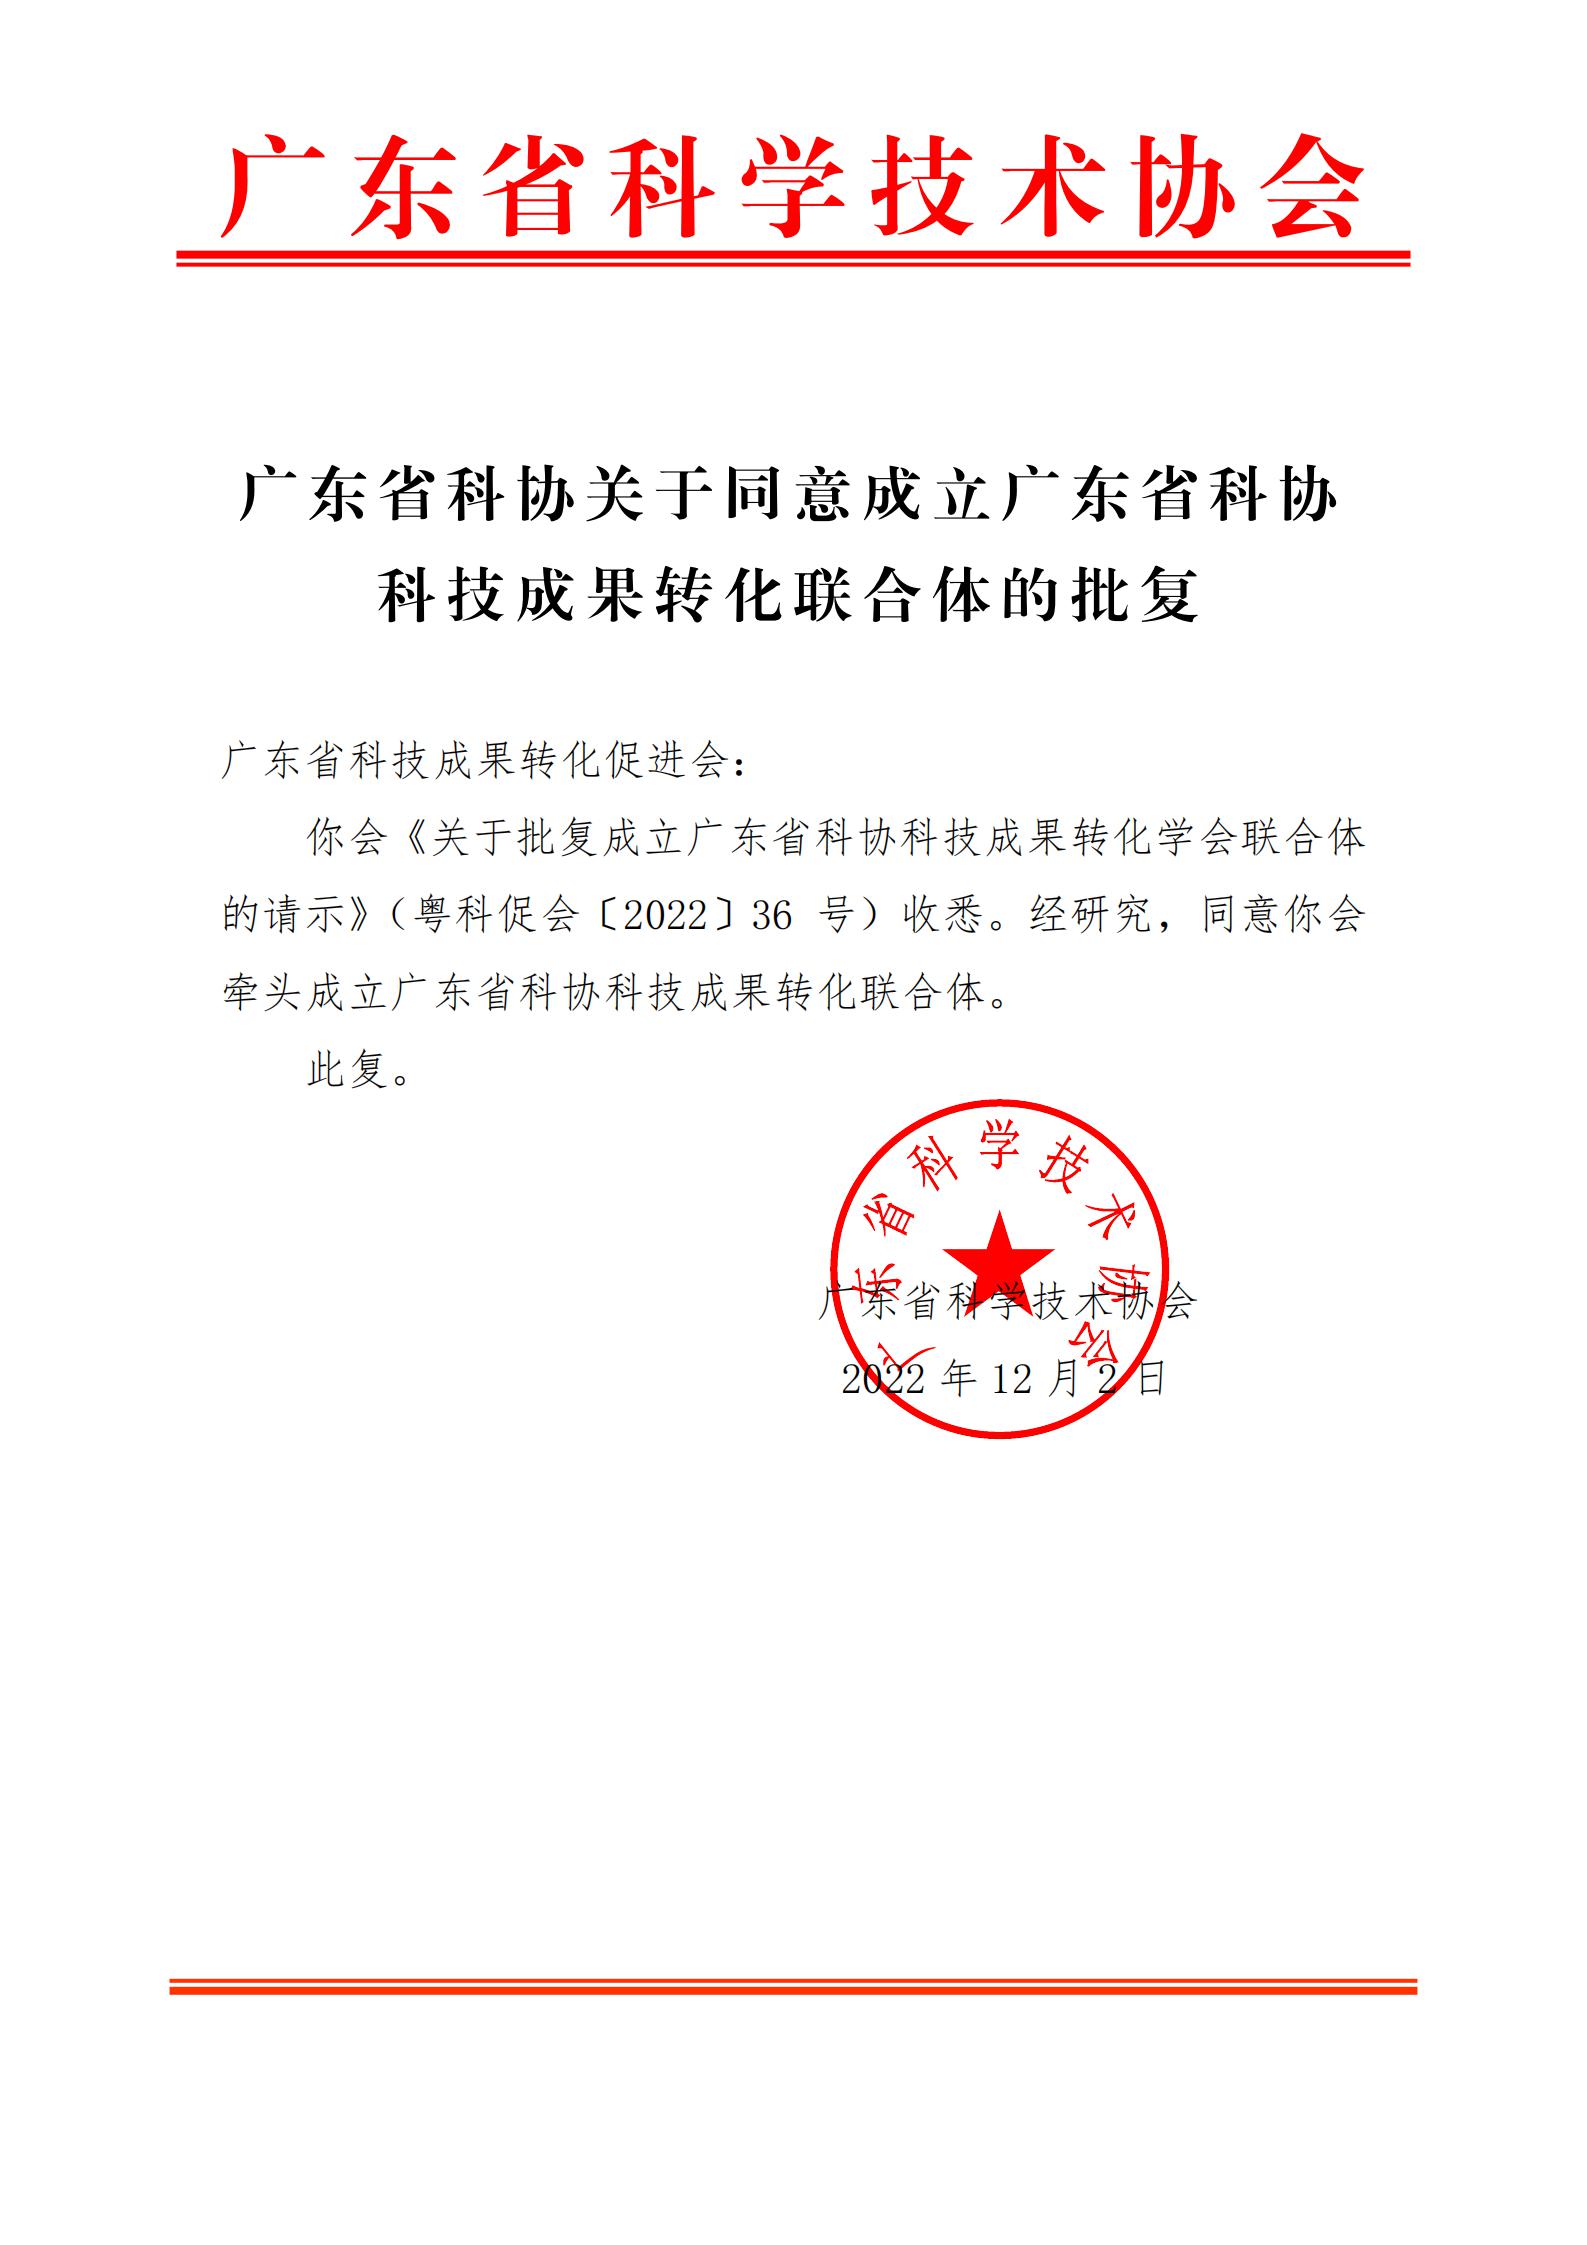 (印章文件)广东省科协关于同意成立广东省科协科技成果转化联合体的批复(1)_00.jpg